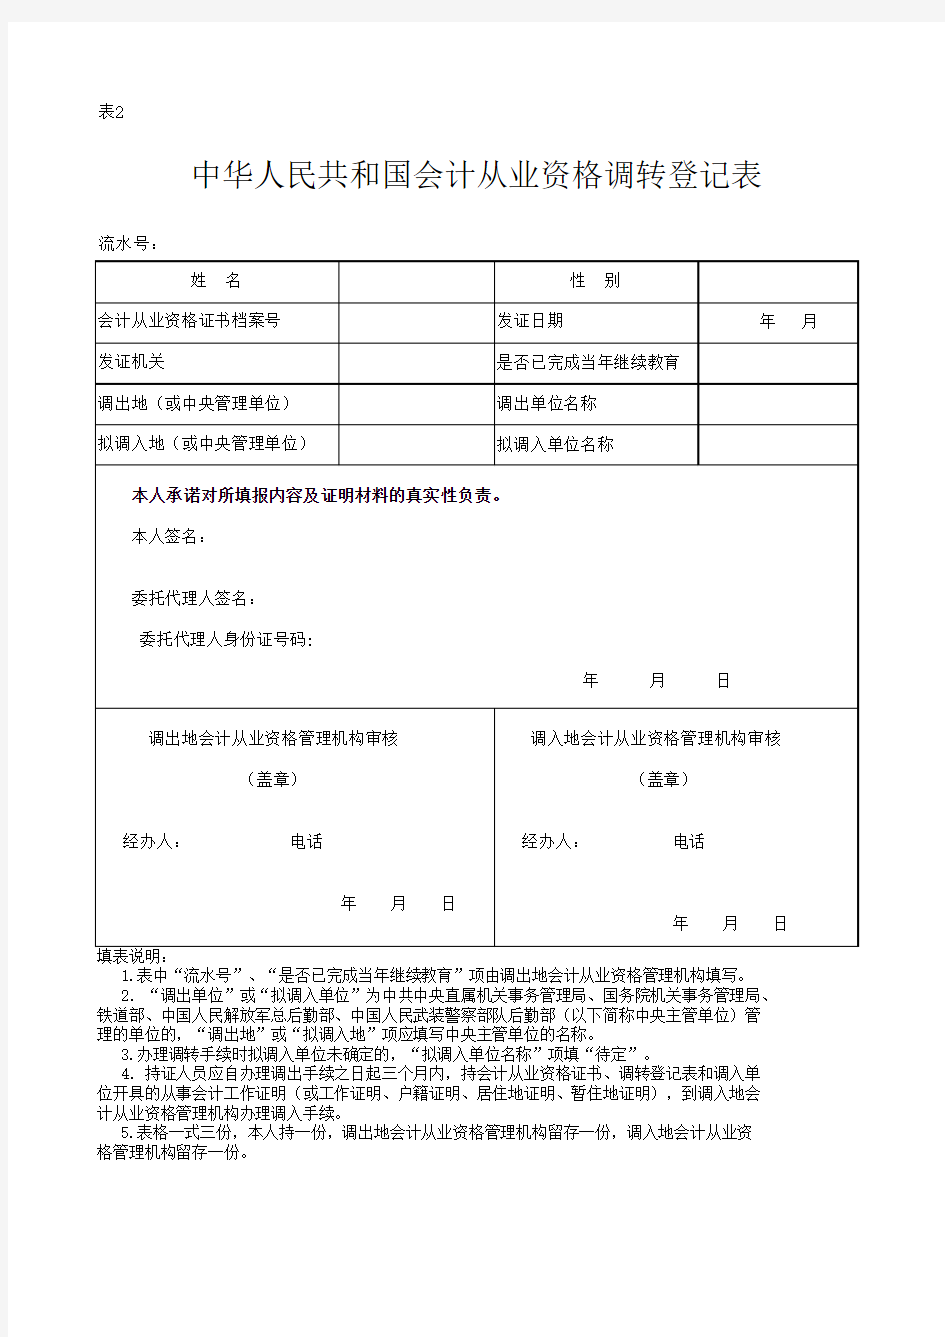 表2.中华人民共和国会计从业资格调转登记表